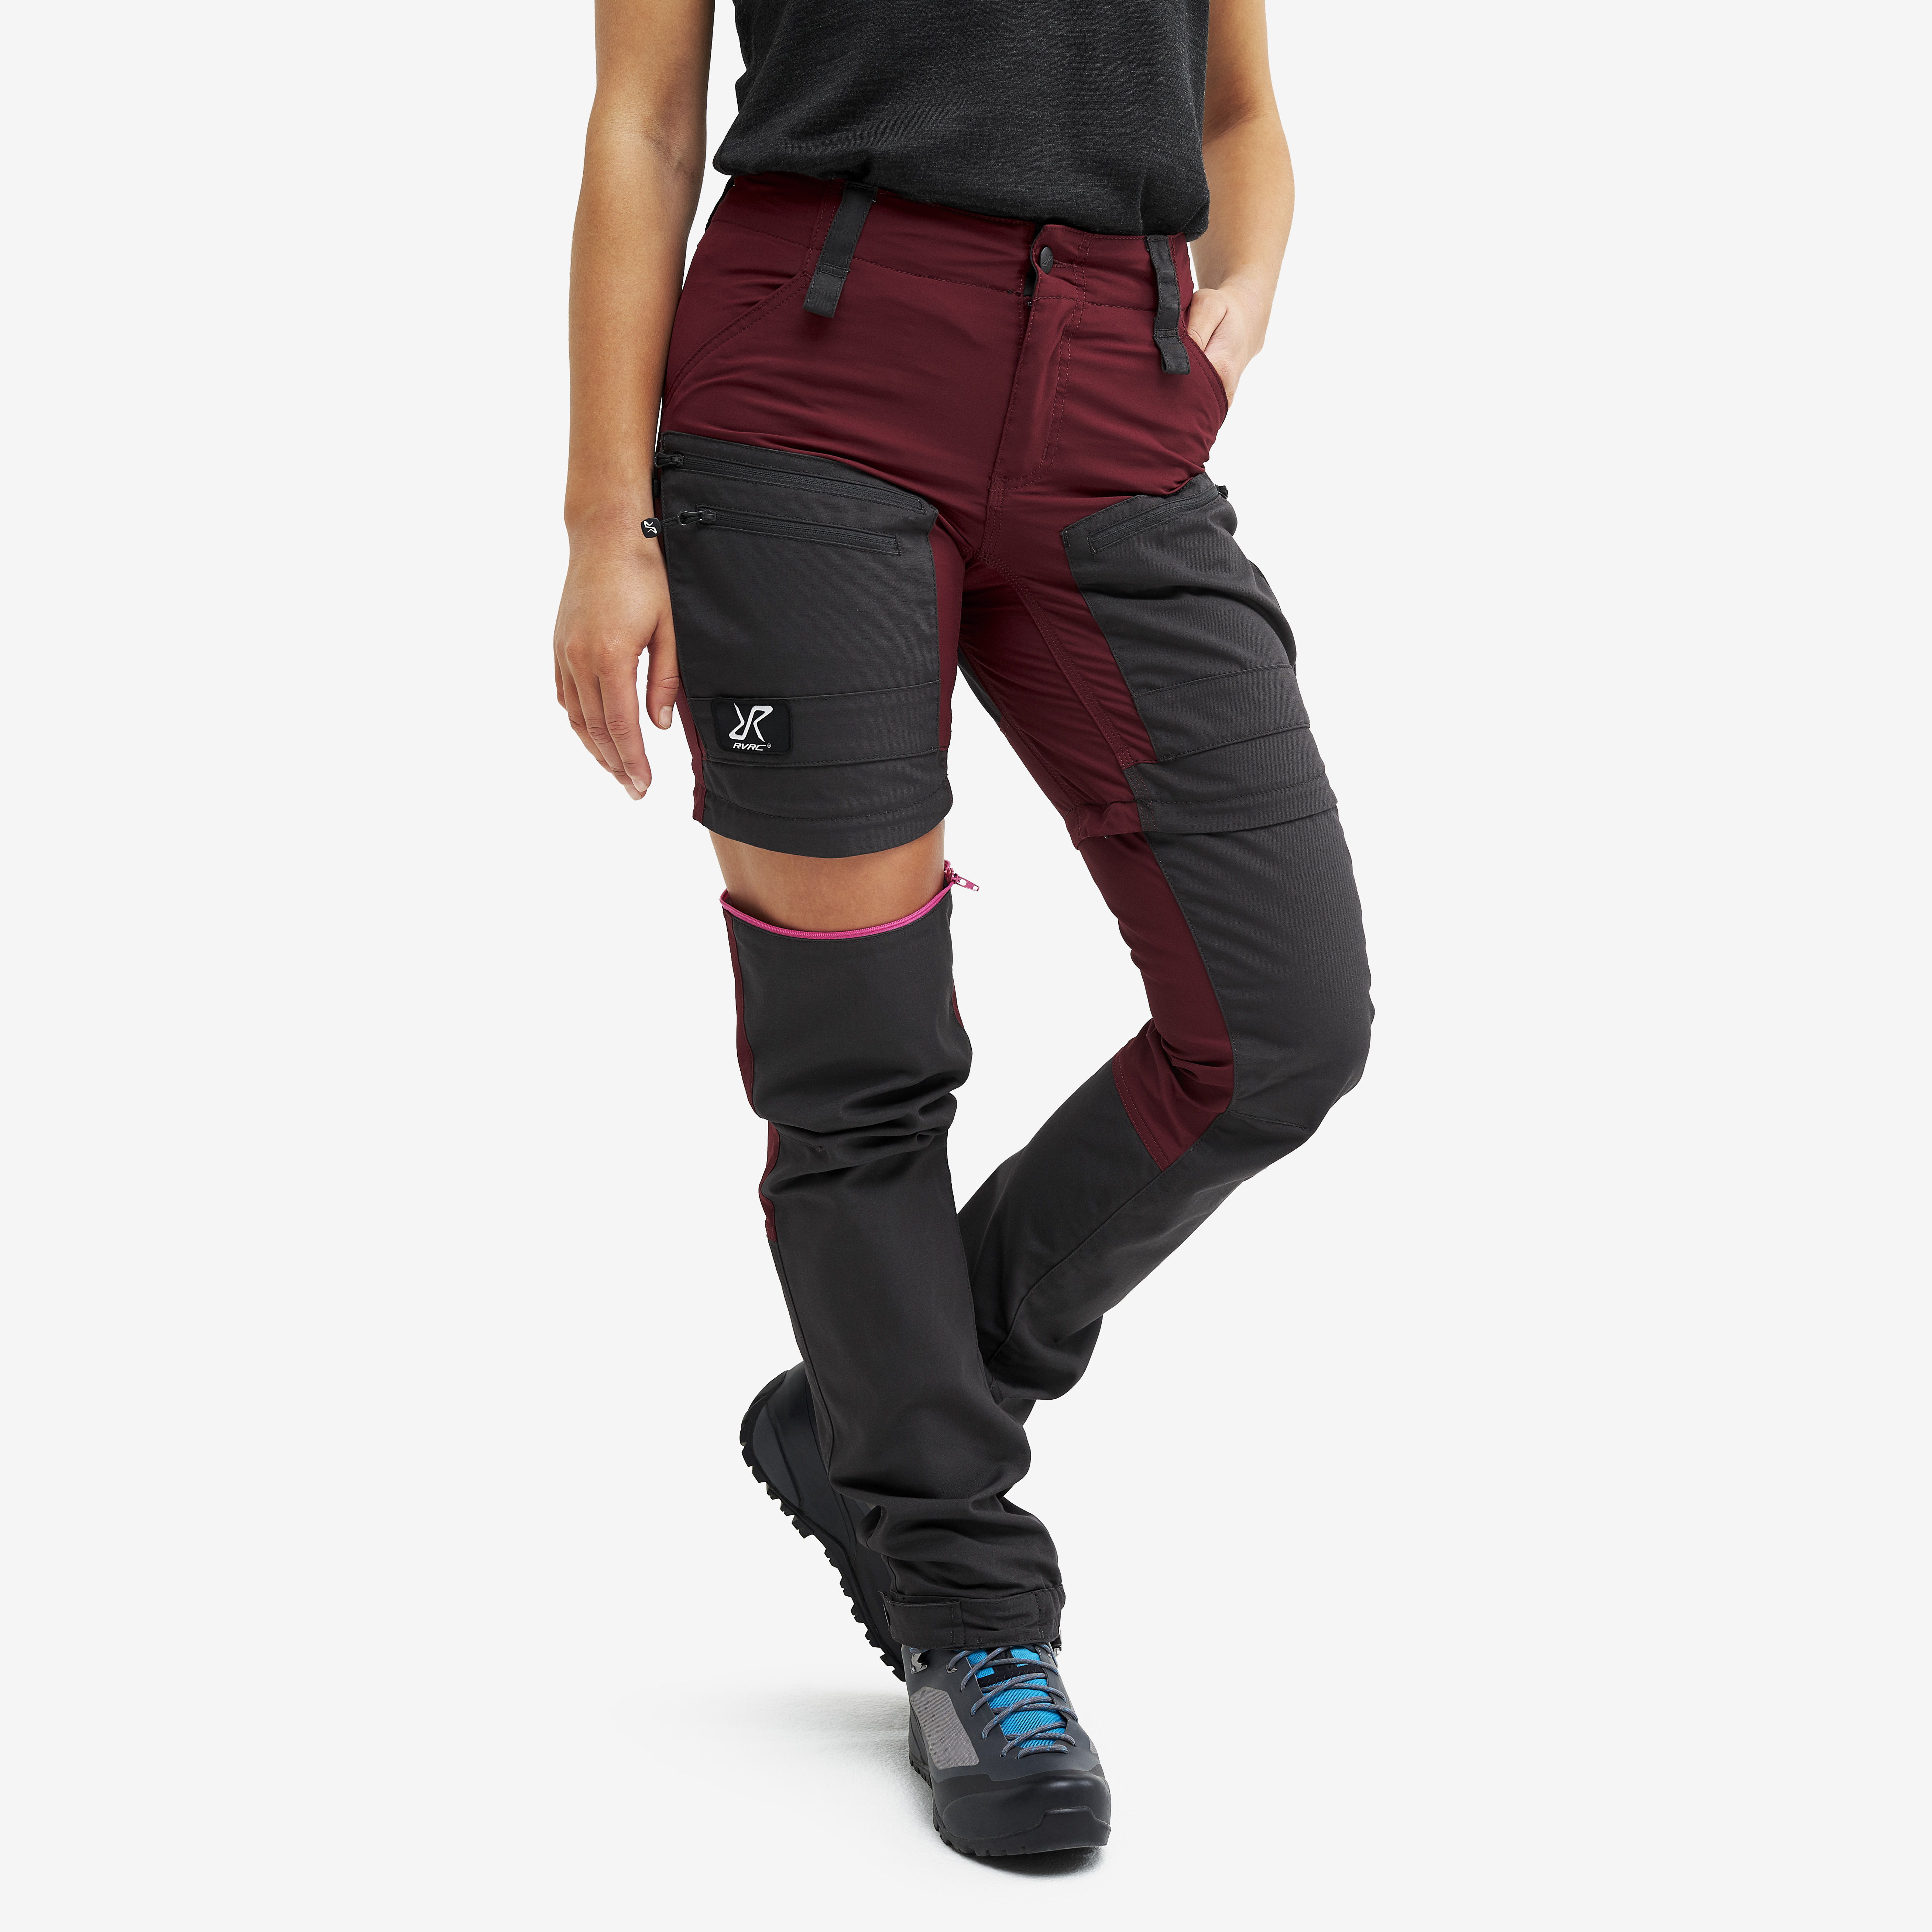 RVRC GP Pro Zip-off hiking pants for men in dark red